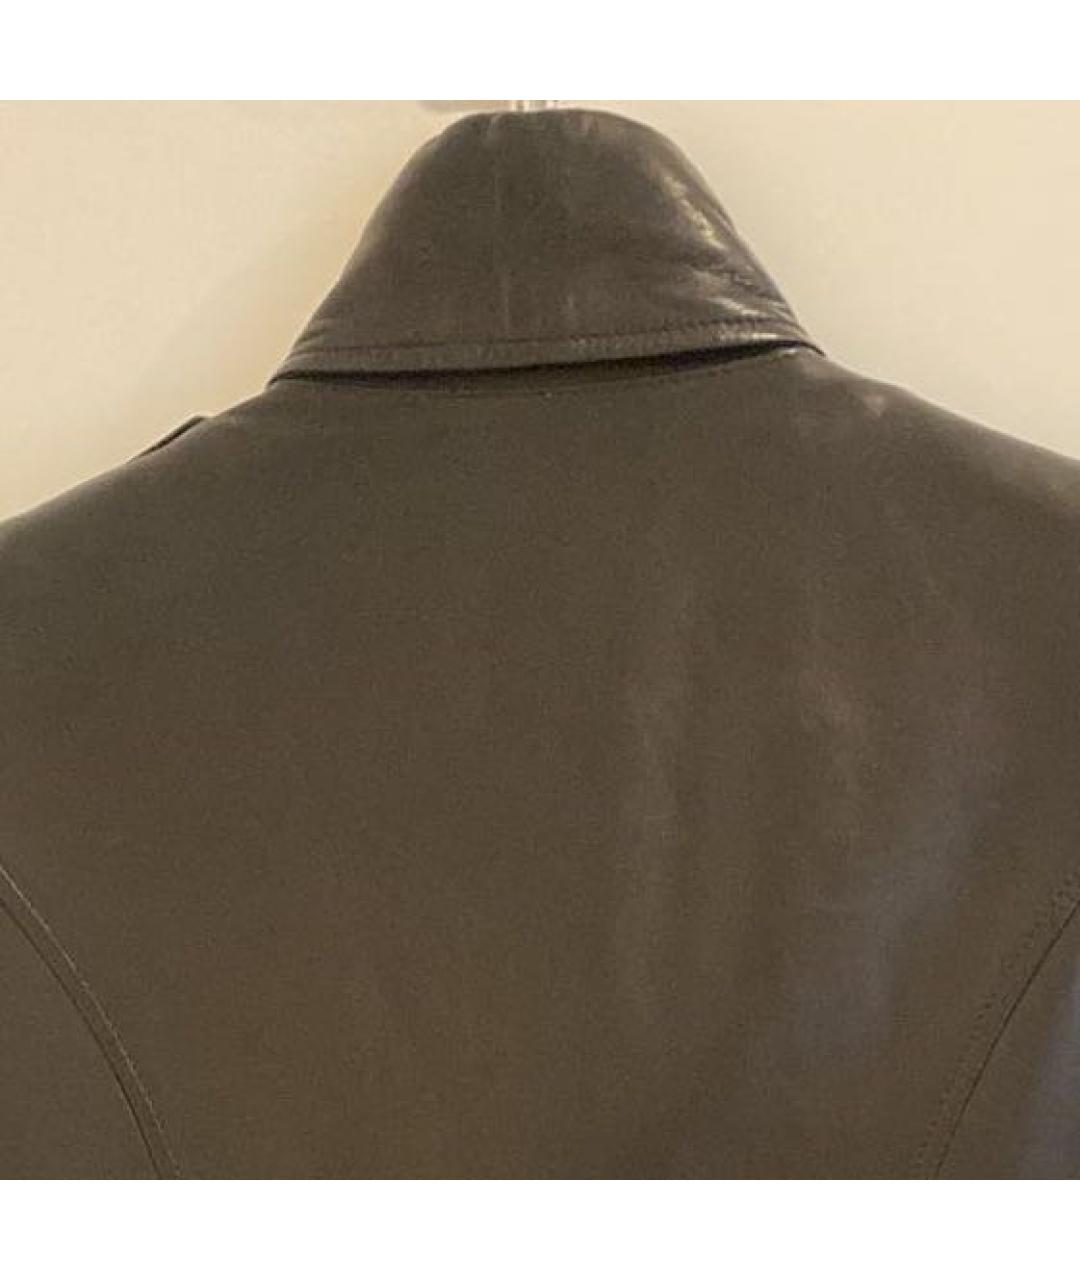 BALMAIN Черная кожаная куртка, фото 3